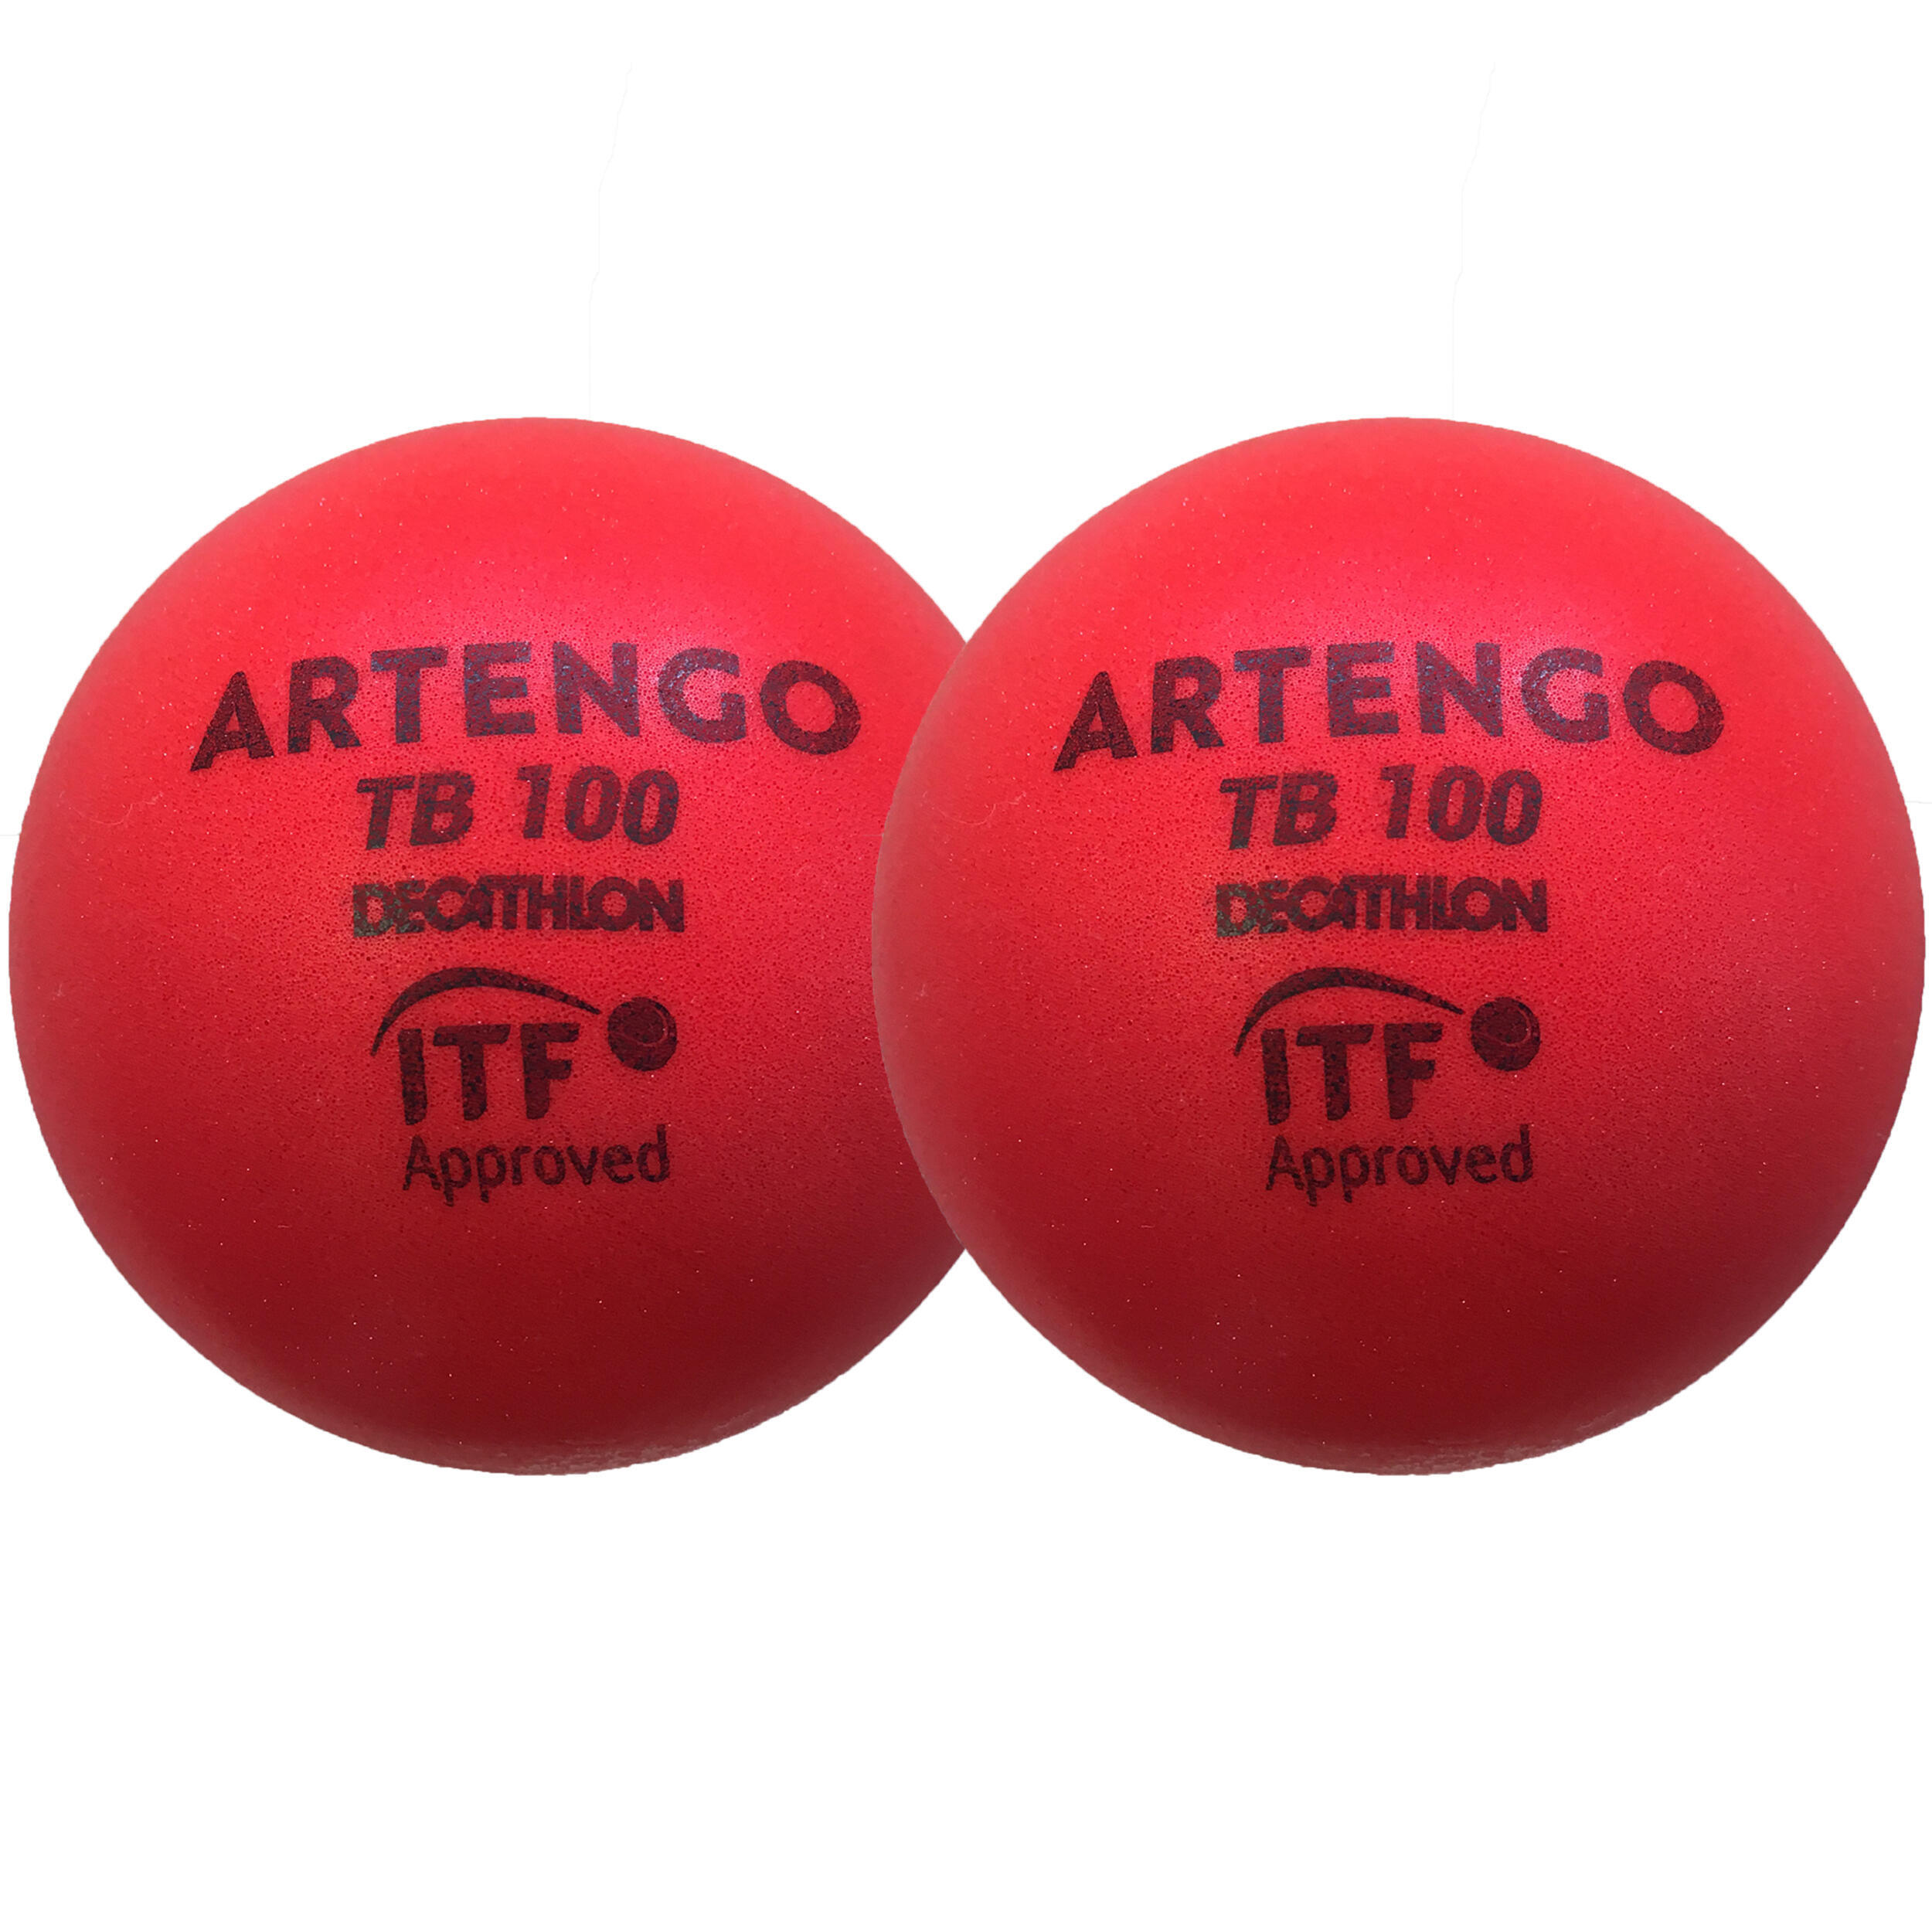 Теннисные мячи TB100 Foam 2-Pack 9 cm Red ARTENGO теннисные мячи balls unlimited red x3